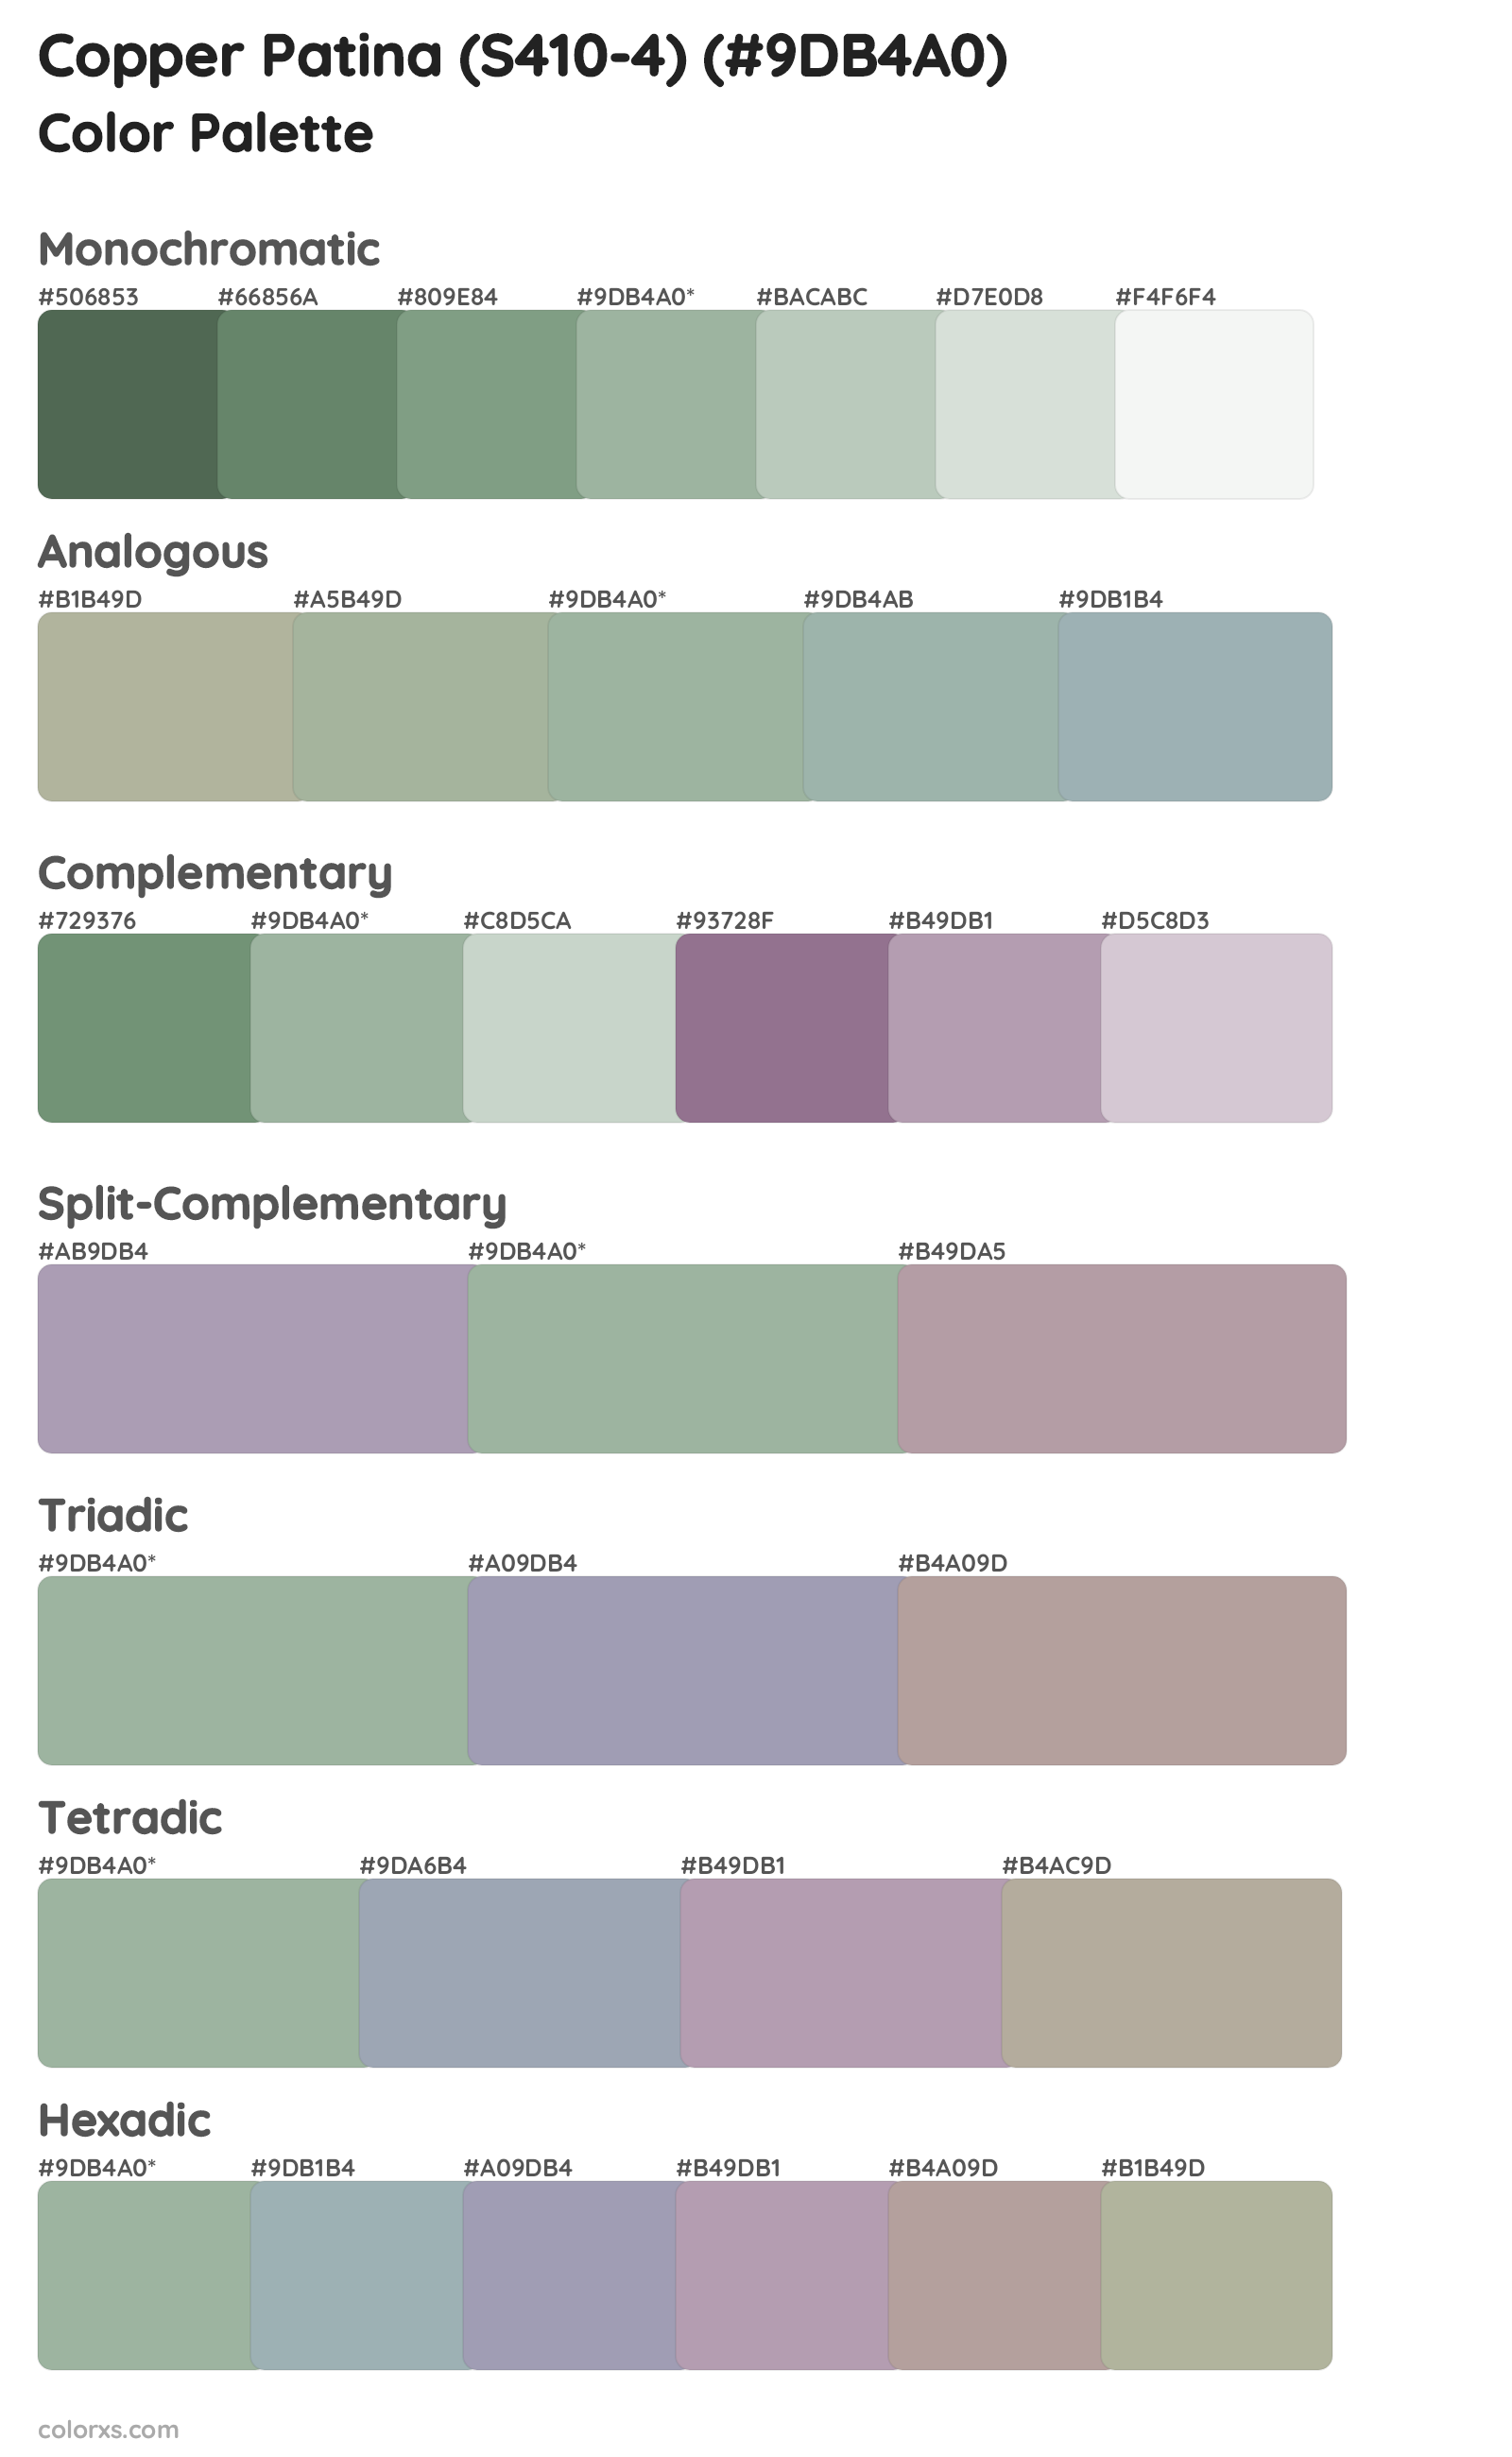 Copper Patina (S410-4) Color Scheme Palettes